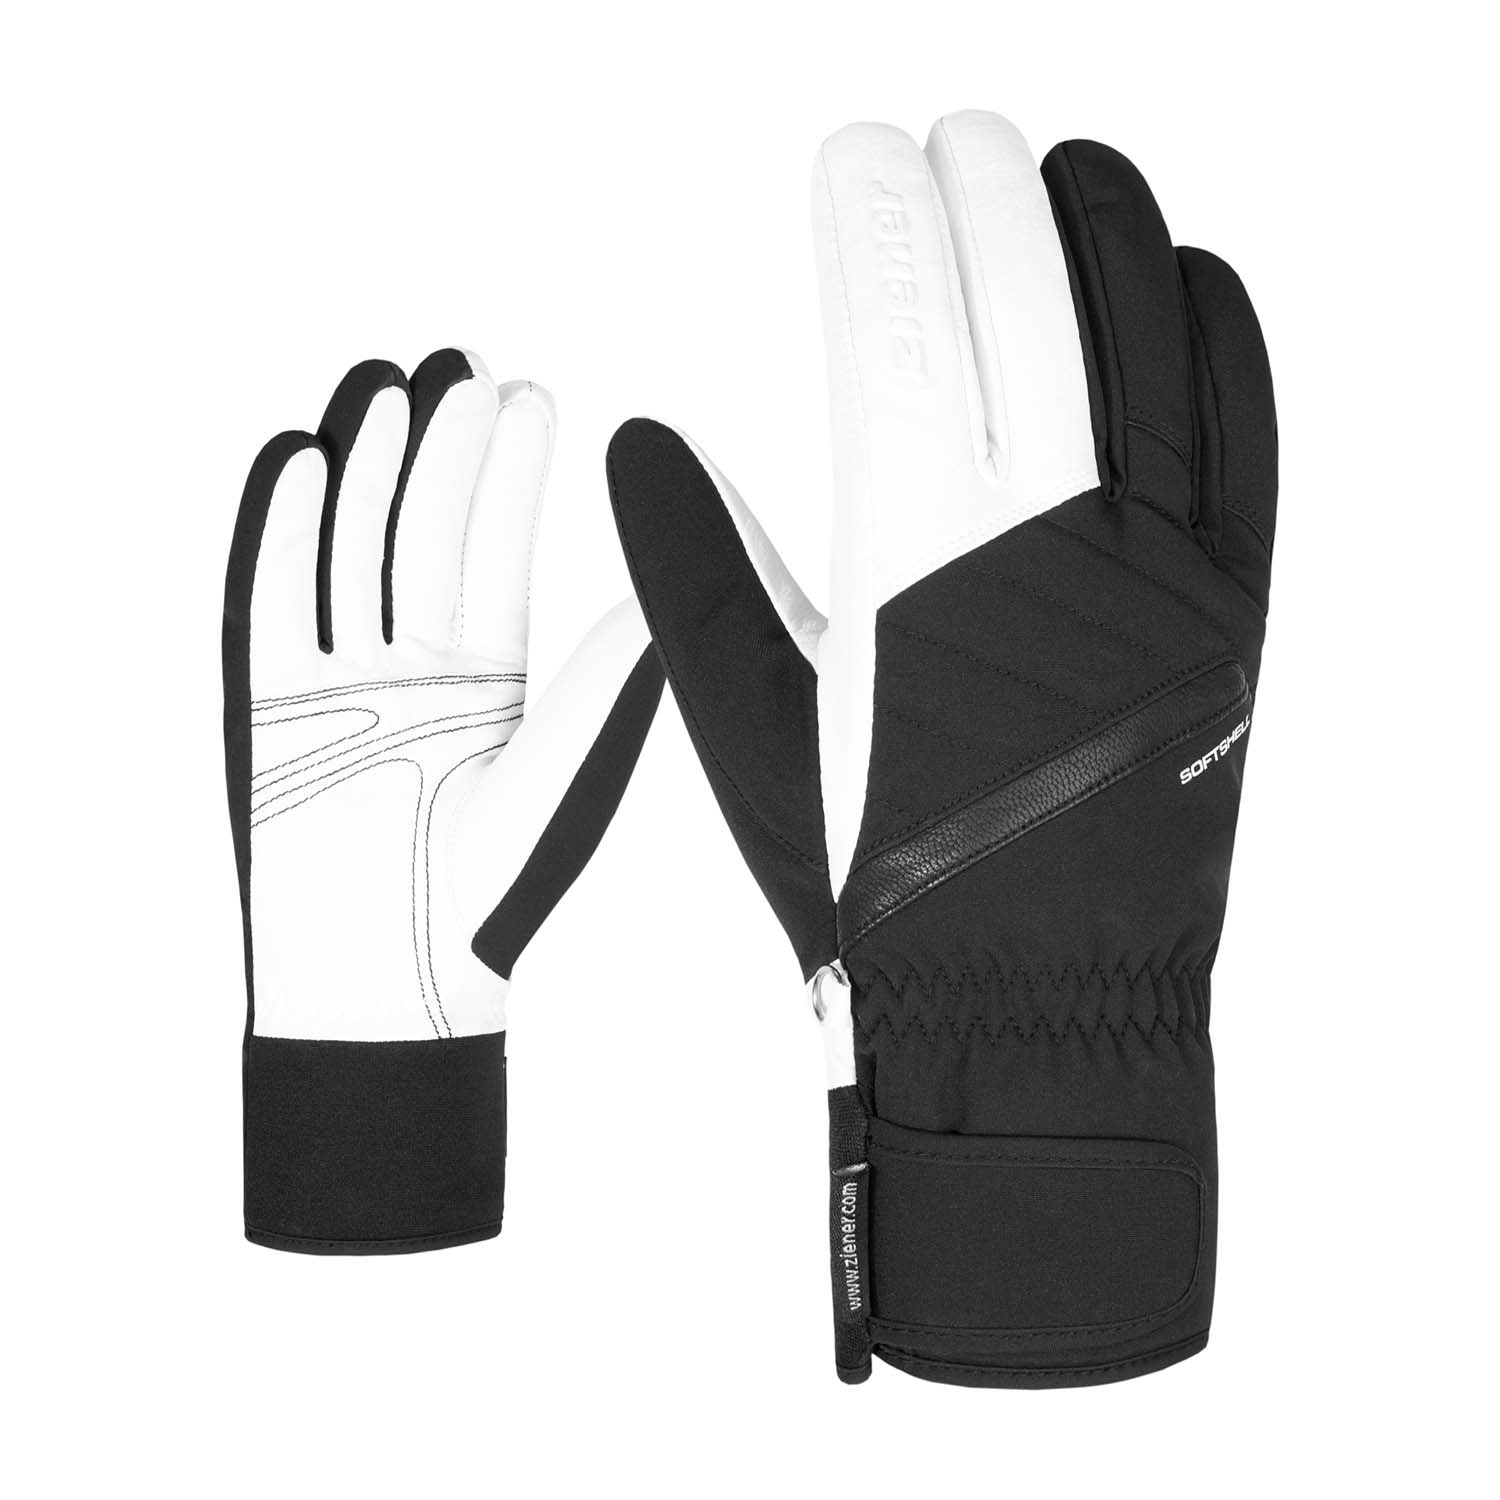 Ziener Kasada AquaShield Ladies Gloves Black/White 2021